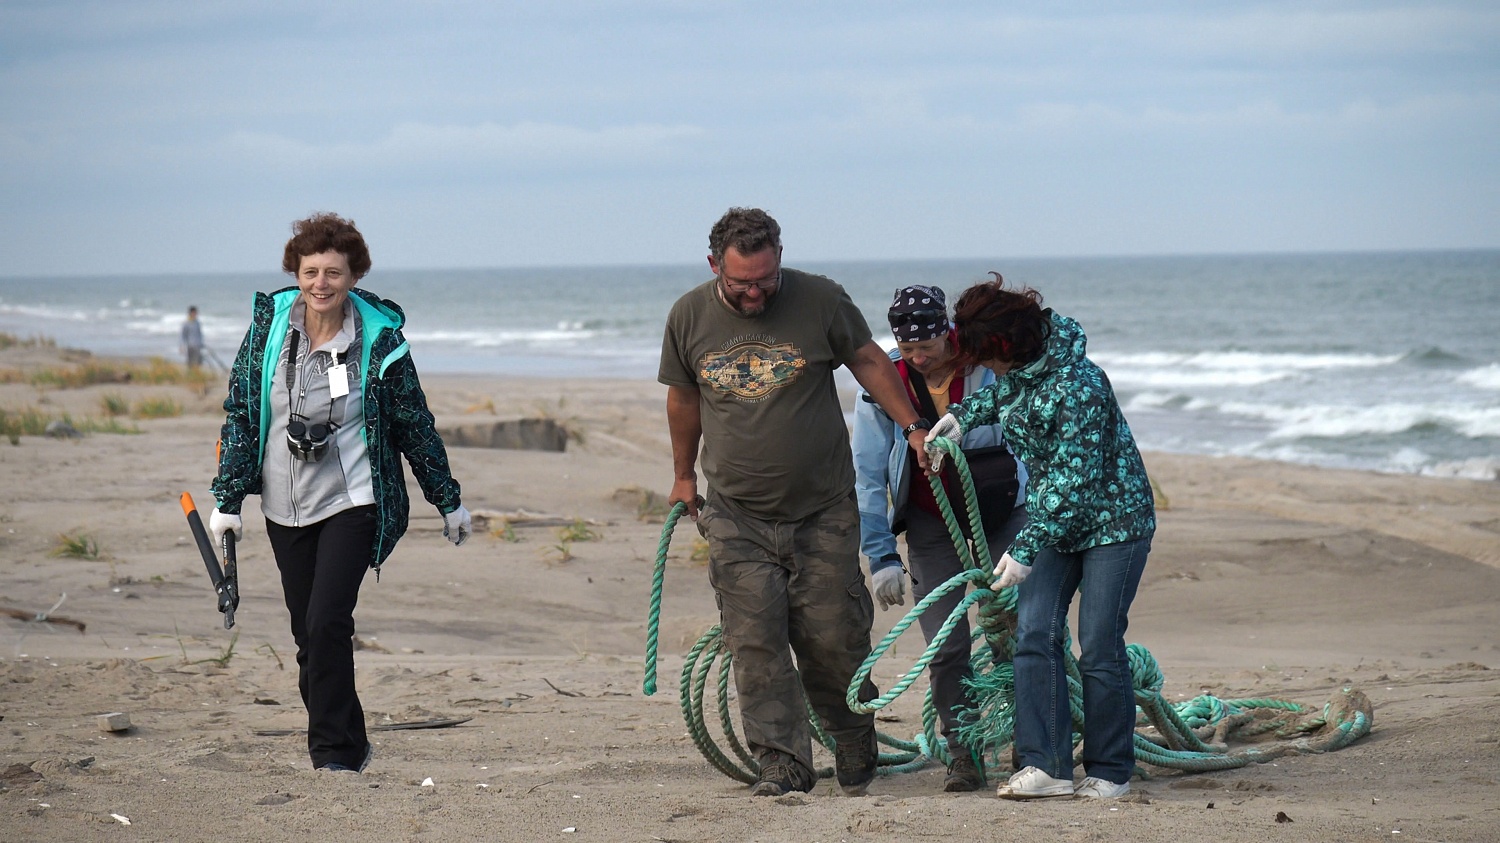 В районе залива Чайво побережье было очищено от брошенных рыболовных сетей, представляющих угрозу для серых китов